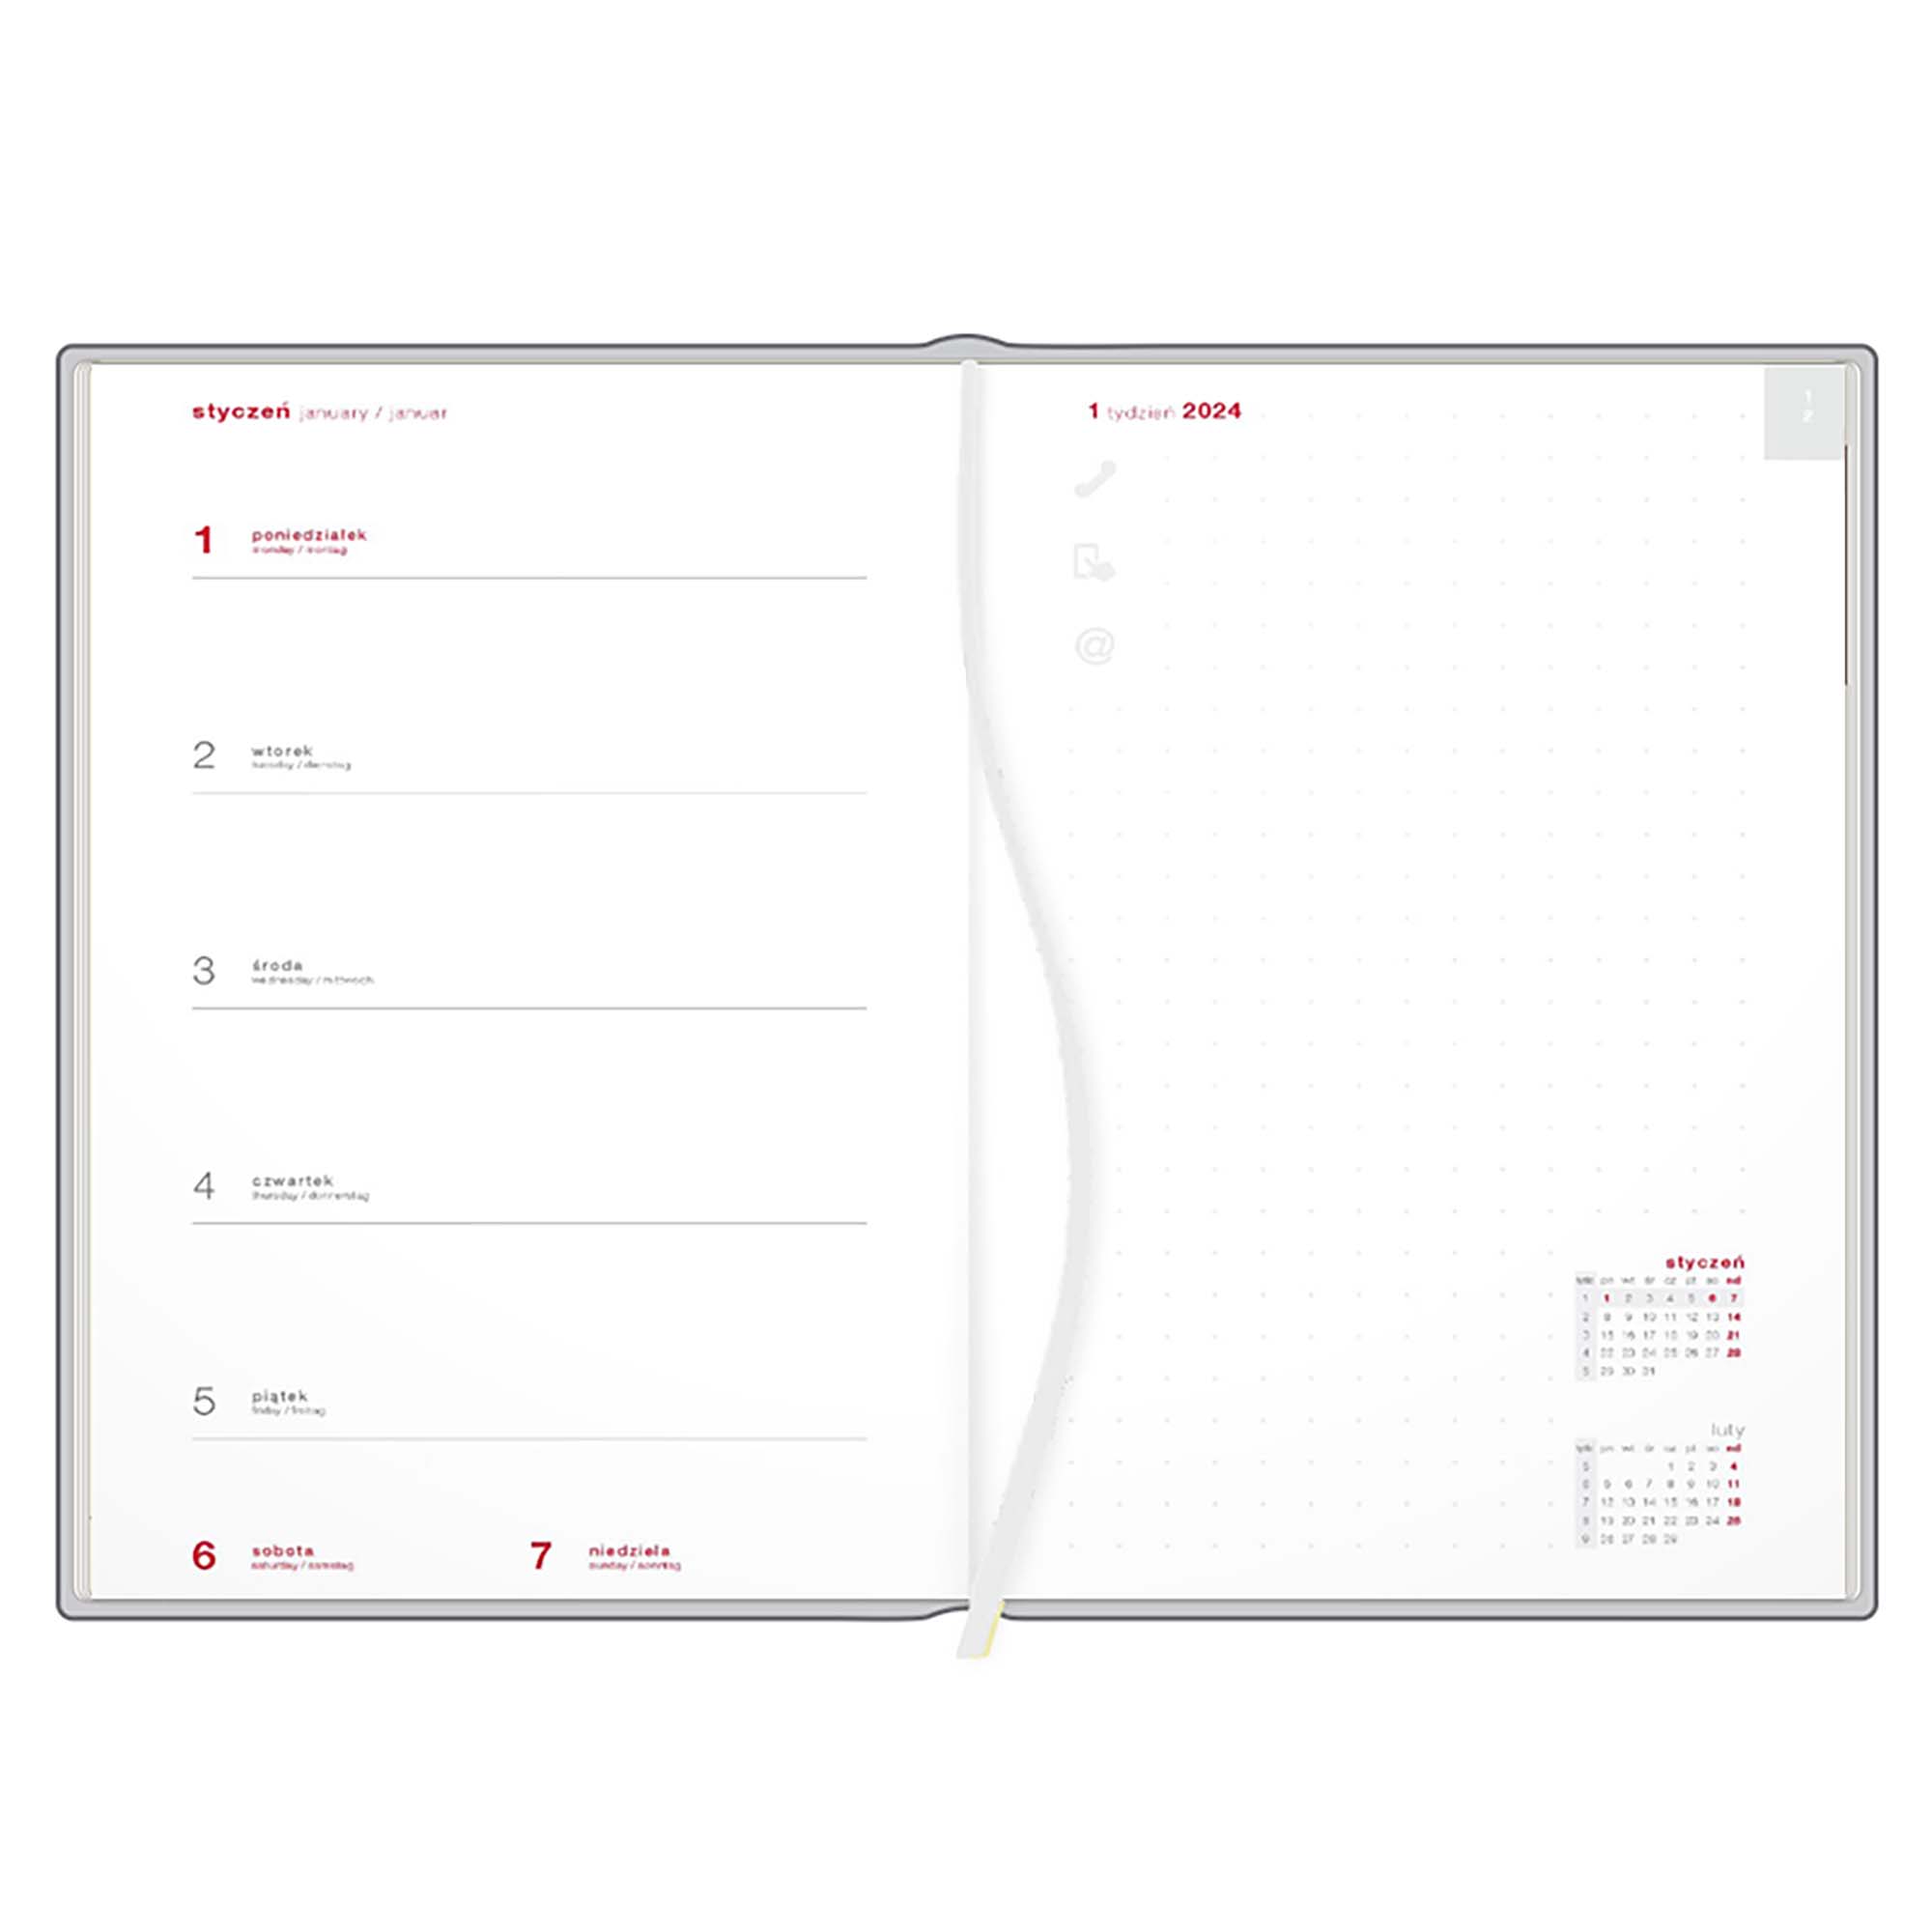 Kalendarz książkowy A4 tygodniowy z notesem, Turyn, różowy